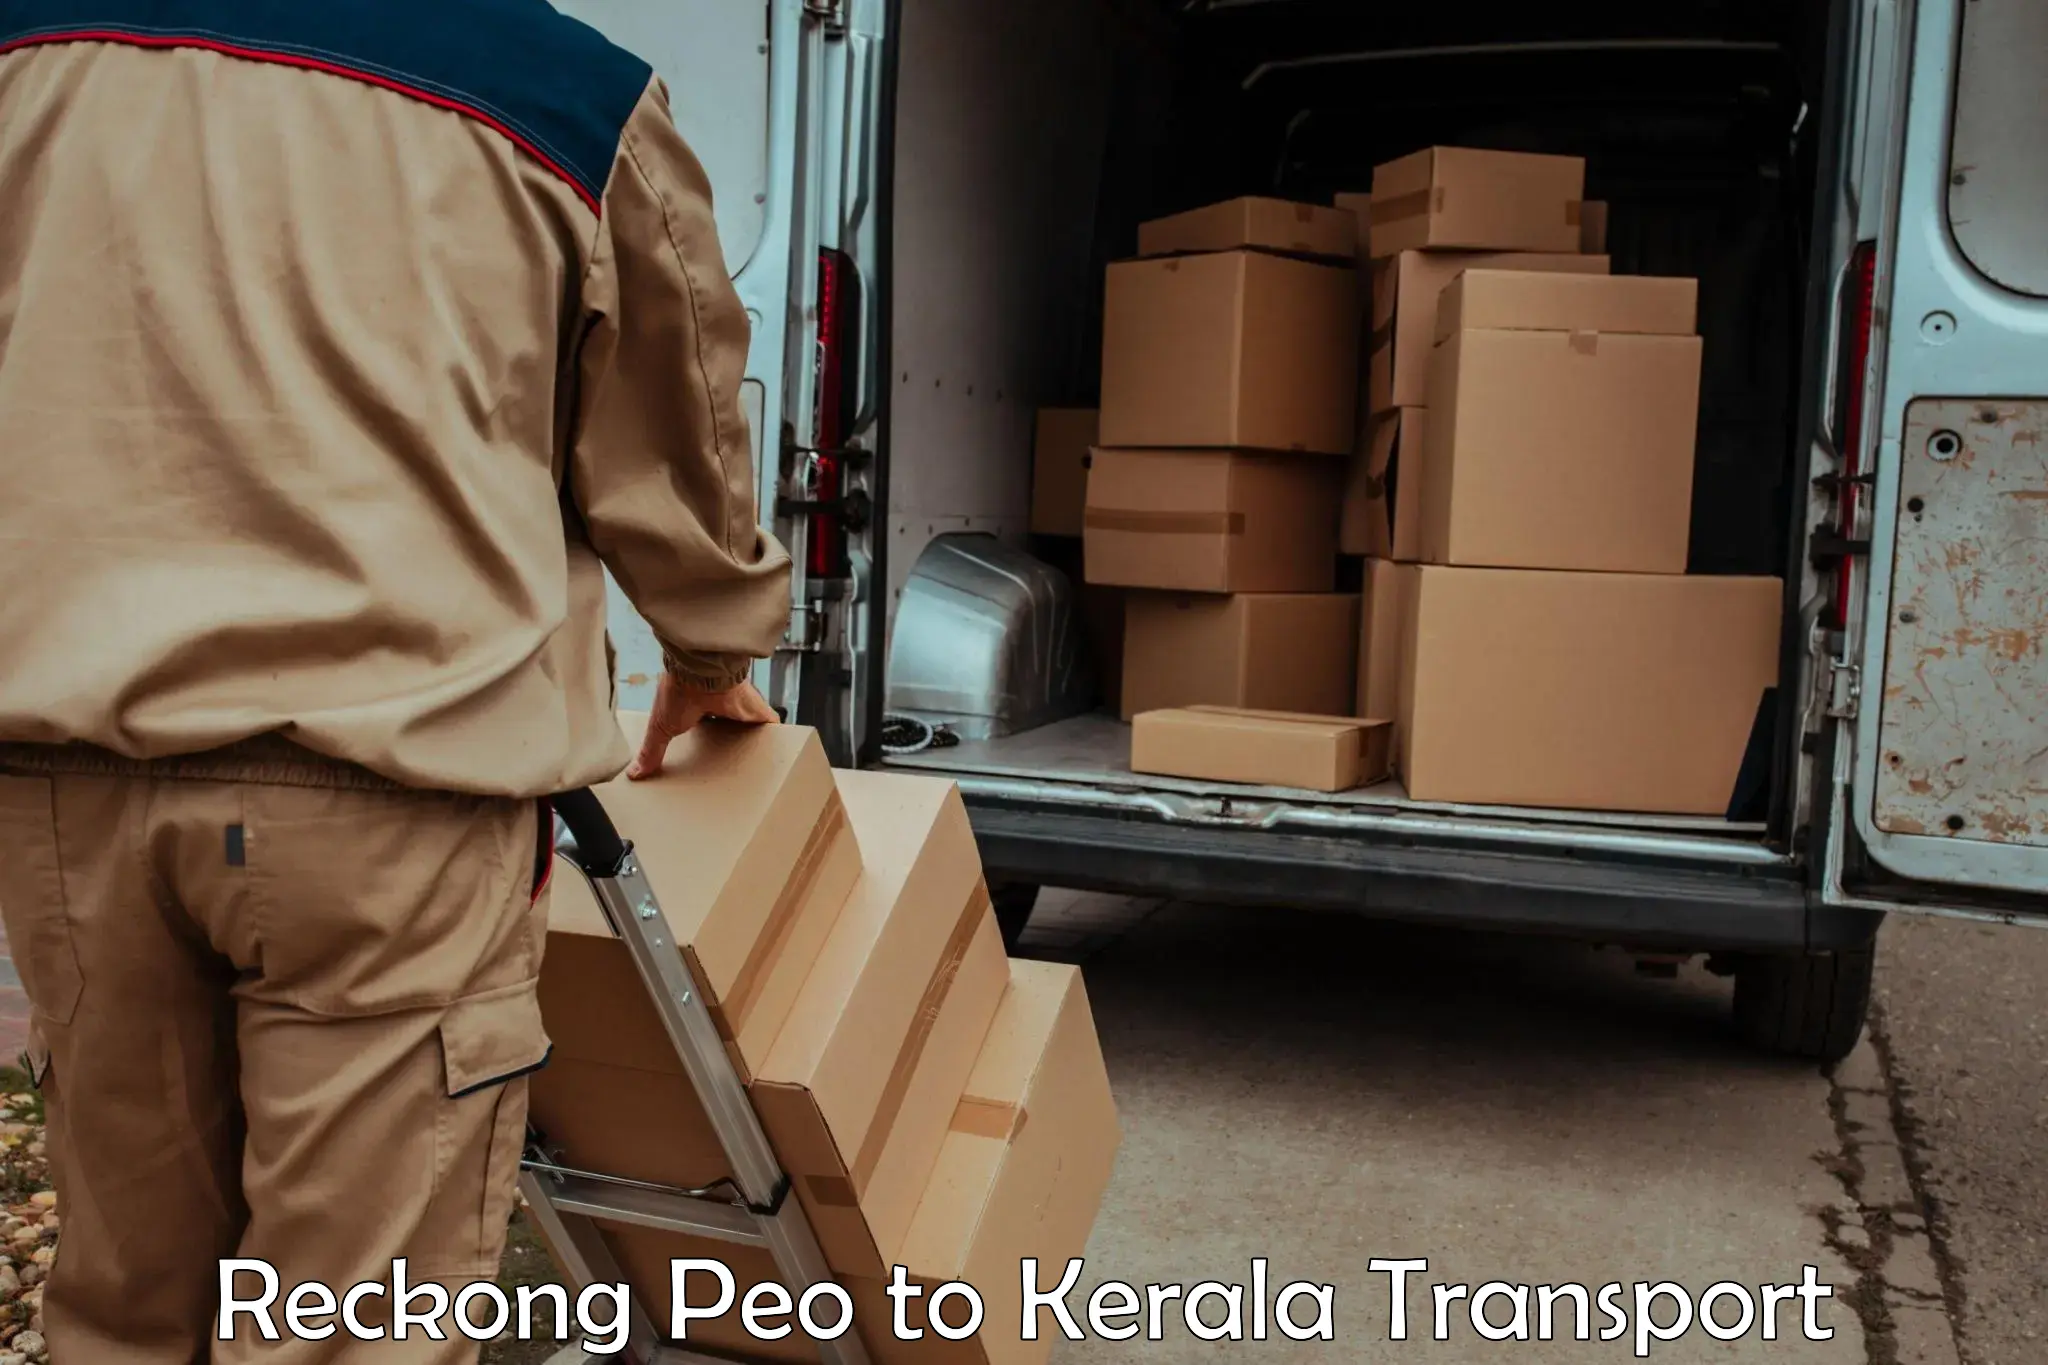 Shipping services Reckong Peo to Thiruvananthapuram